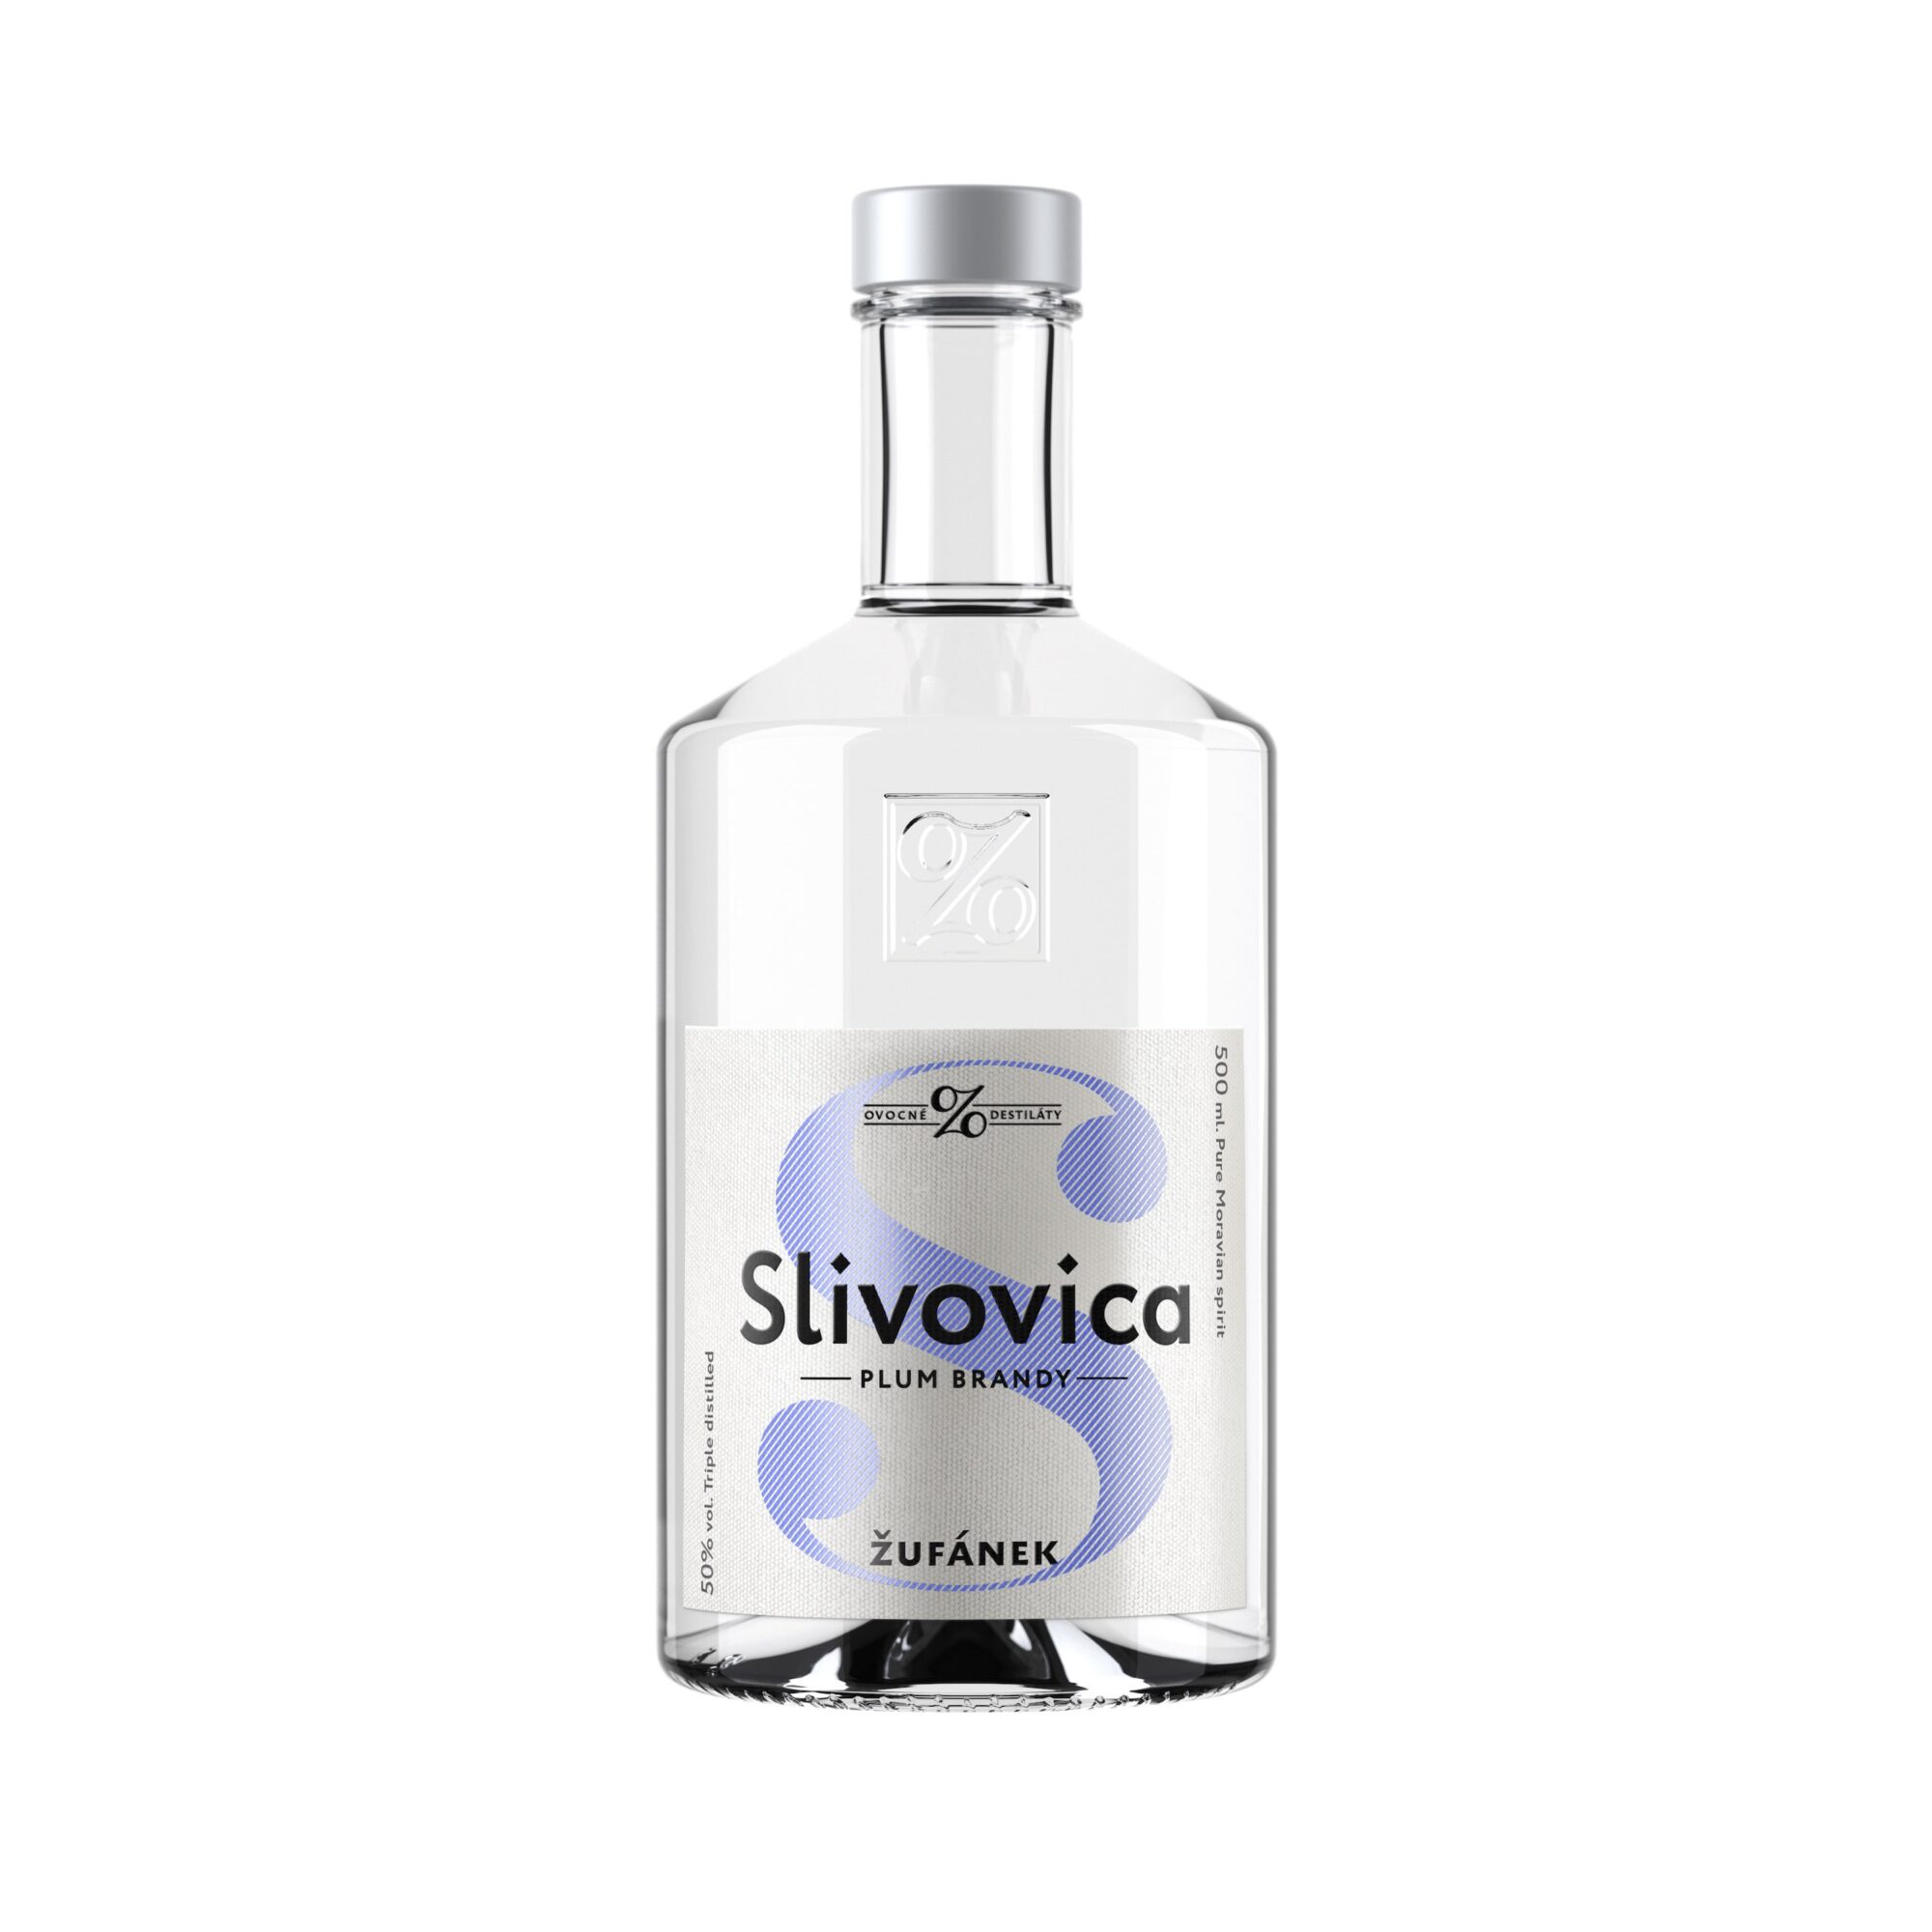 Slivovitz Plum brandy Zufanek, a fine fruit spirit distilled from plums